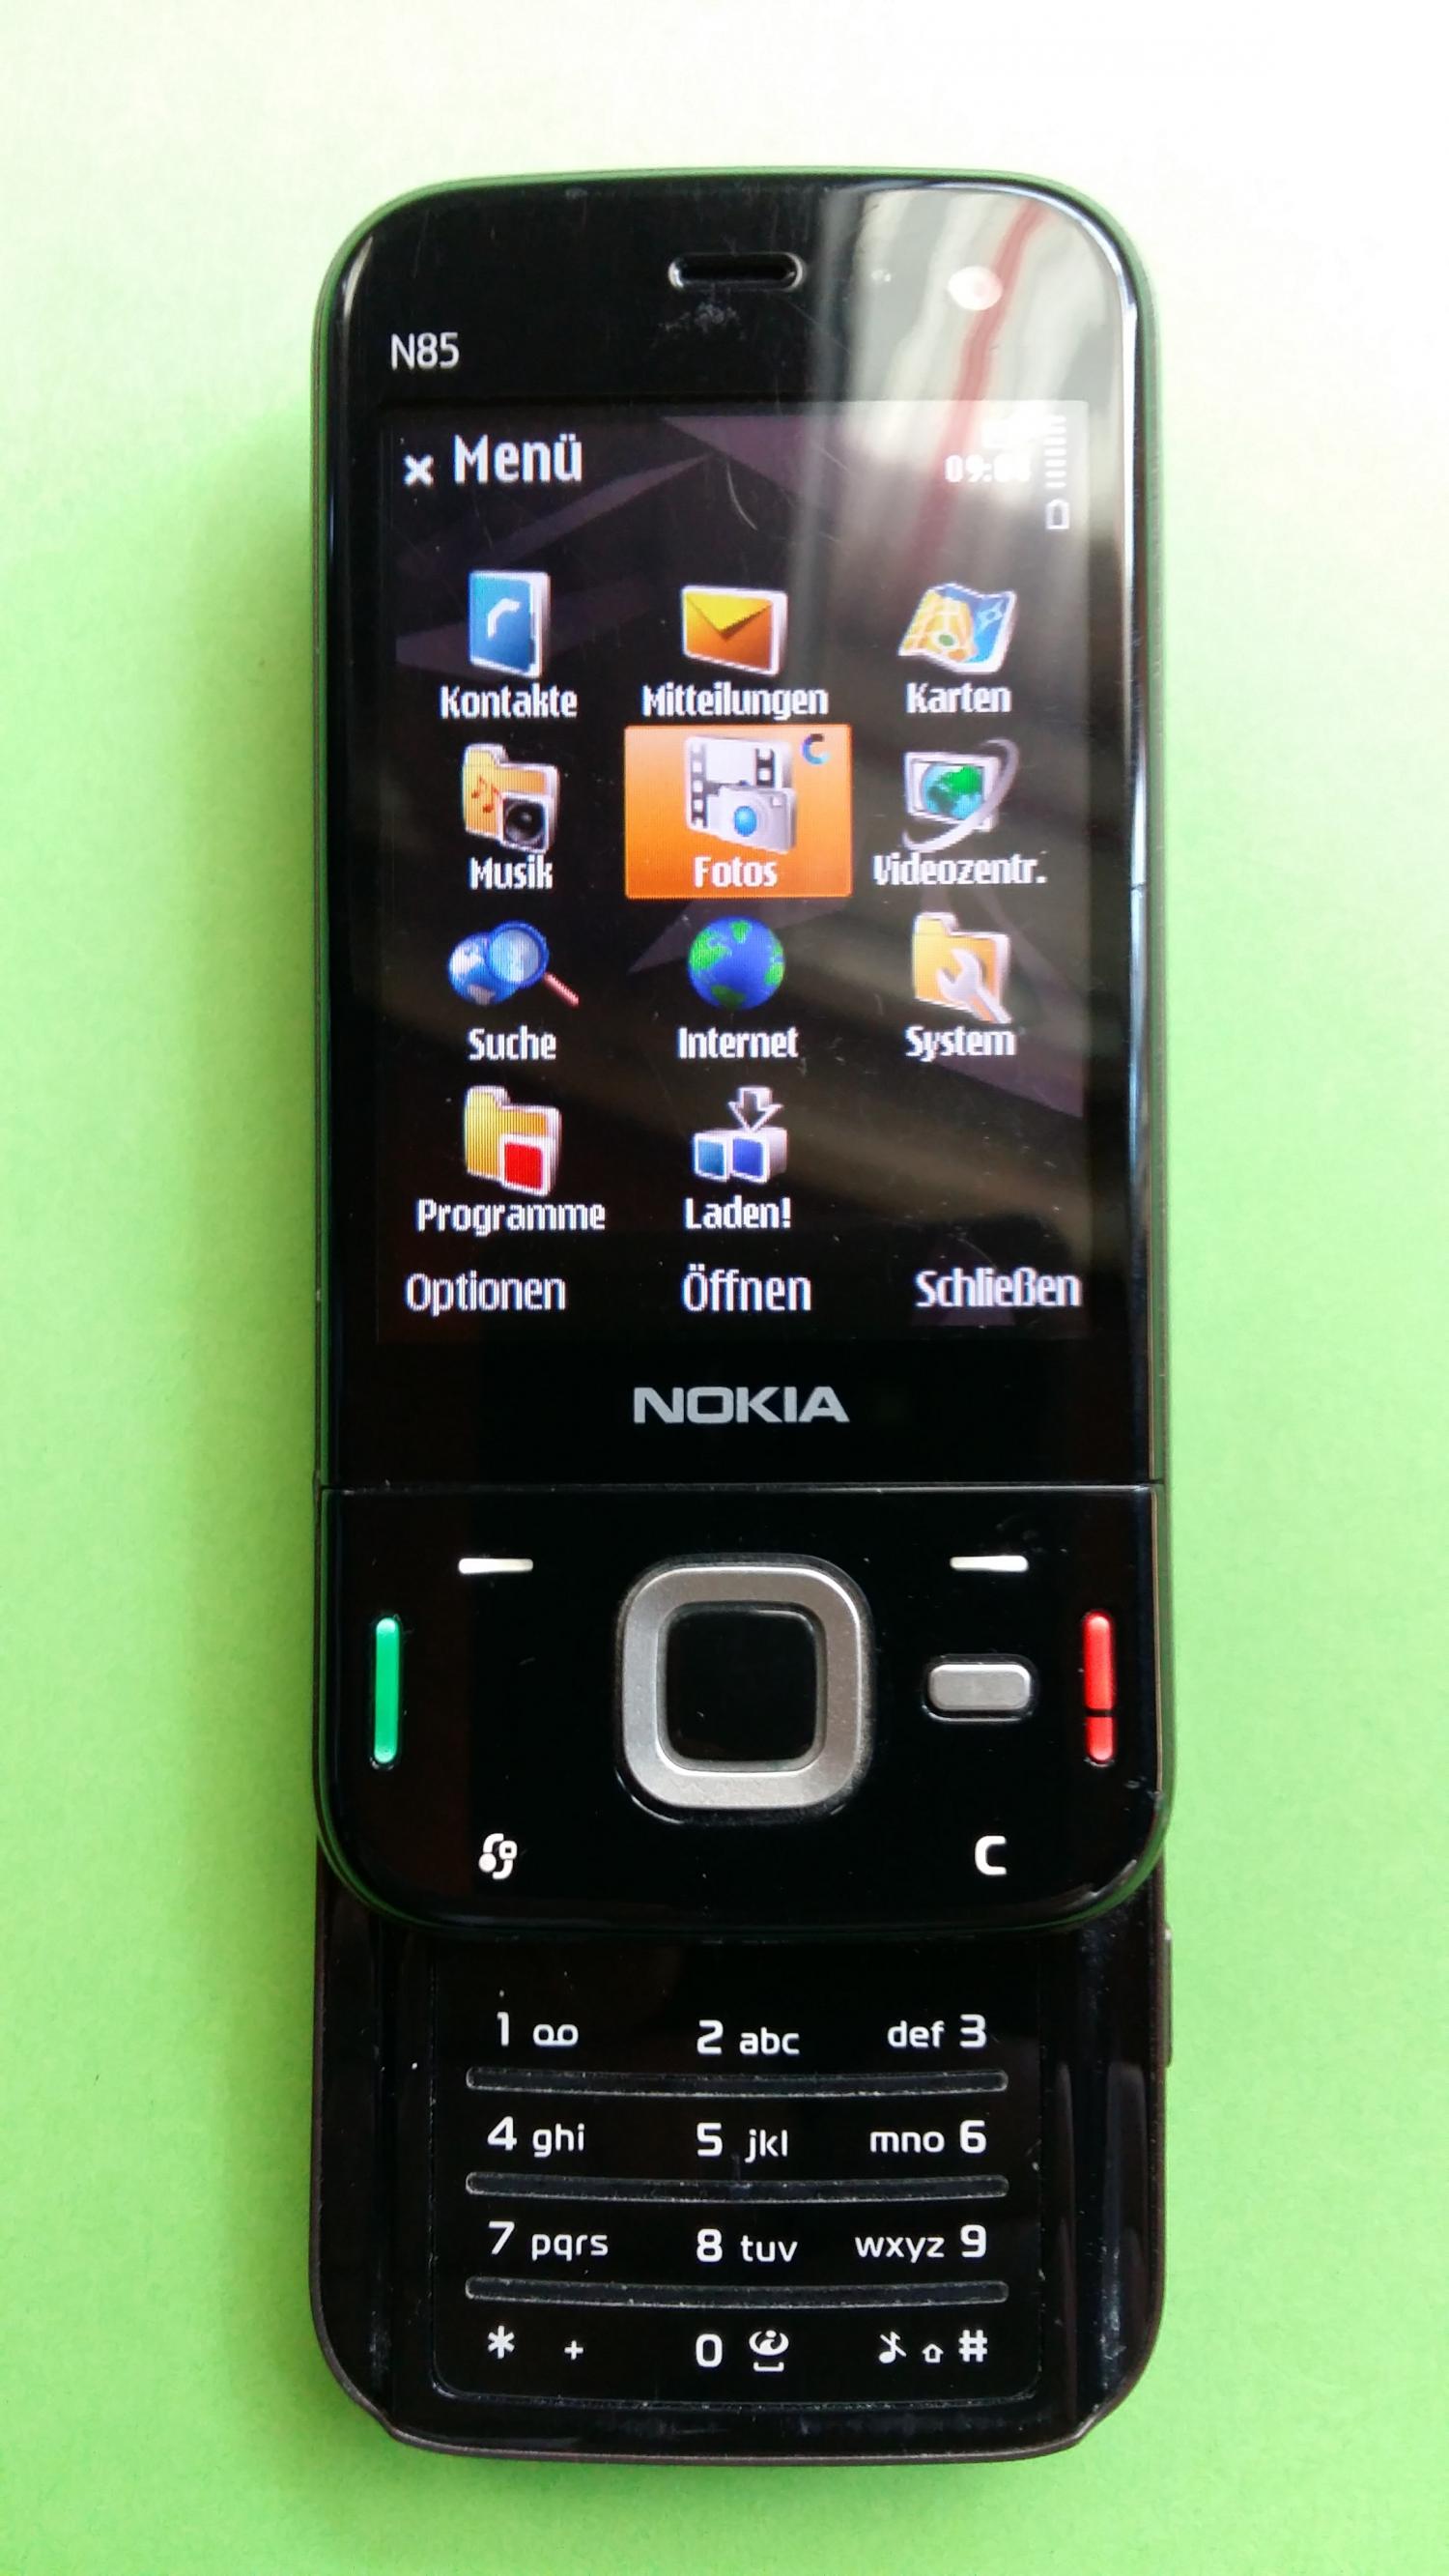 image-7321465-Nokia N85-1 (1)2.jpg